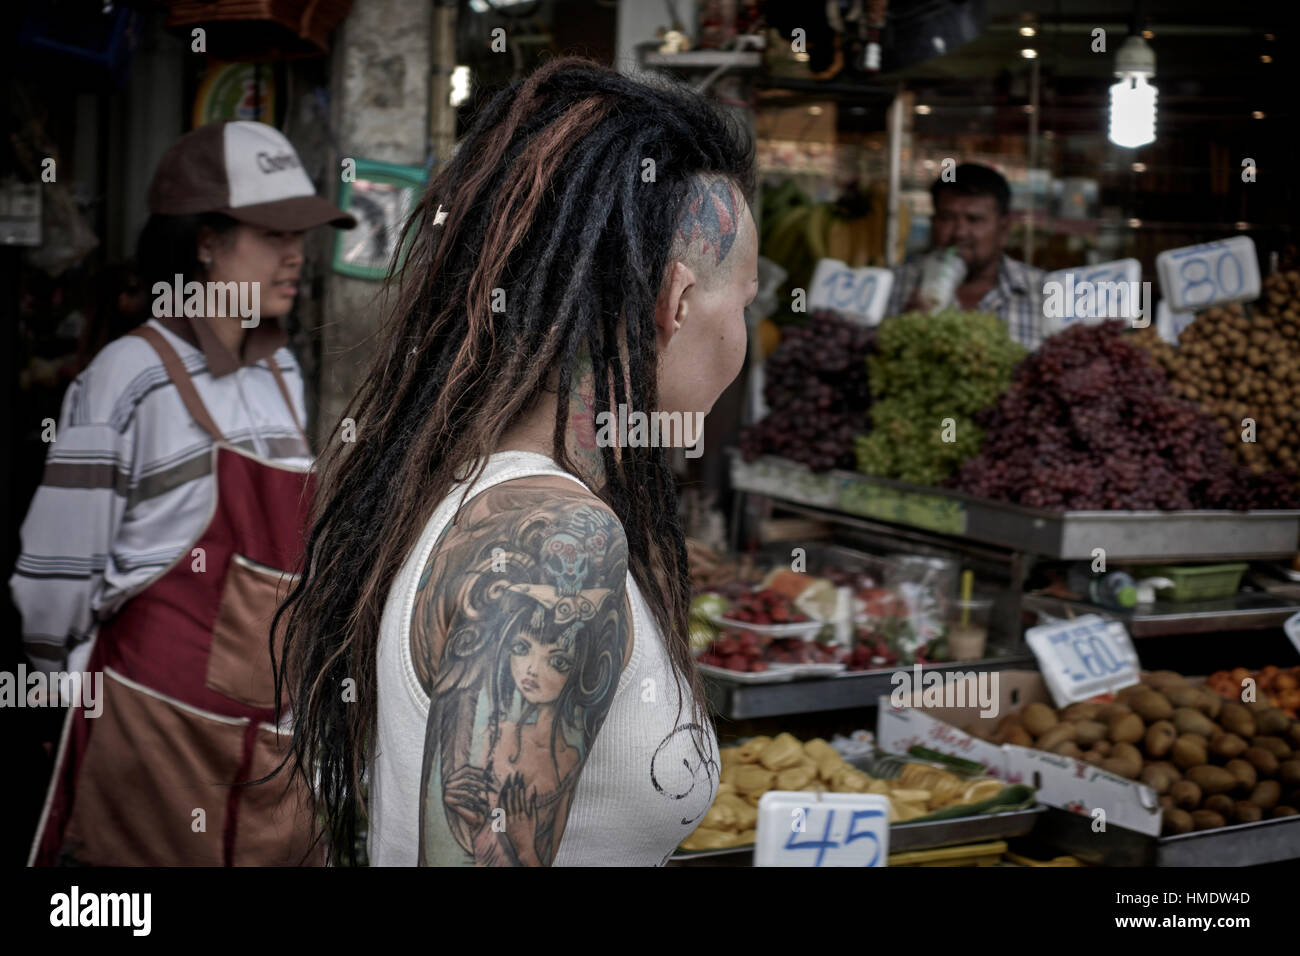 Tatuaggio donna. Prolunghe per capelli con sistema di blocco, tatuaggi per la testa e le braccia. Pattaya Thailandia Sud-Est asiatico Foto Stock